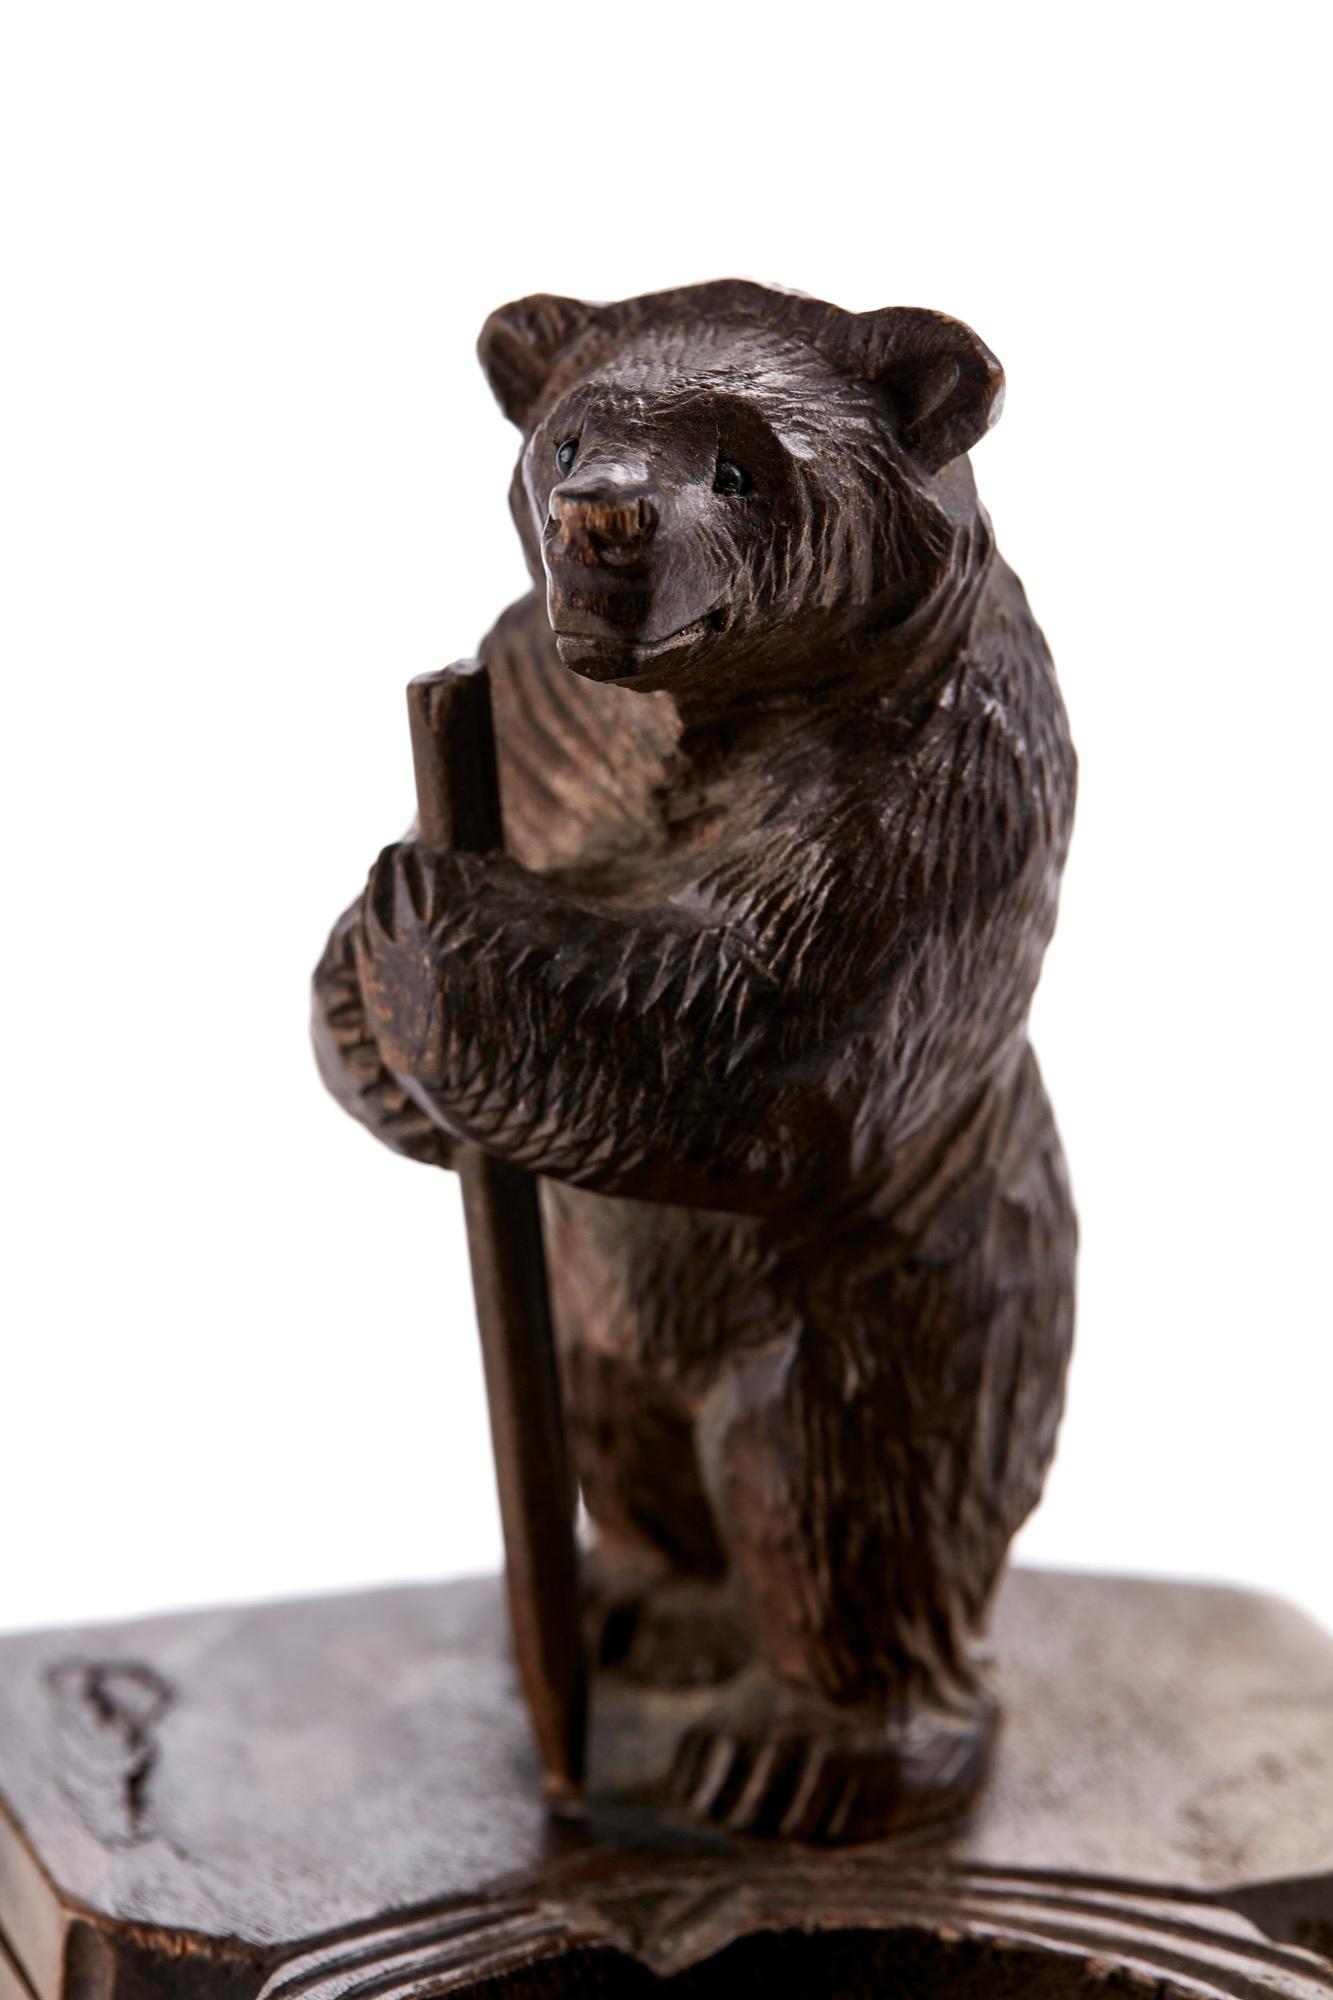 Antique porte-allumettes Victorien en forme d'ours sculpté de la Forêt Noire avec un ours debout bien sculpté à côté d'un porte-allumettes et d'un cendrier.

En très bon état d'origine.

Mesures : H 10.5cm
W 11cm
D 9cm
Date 1880.
 